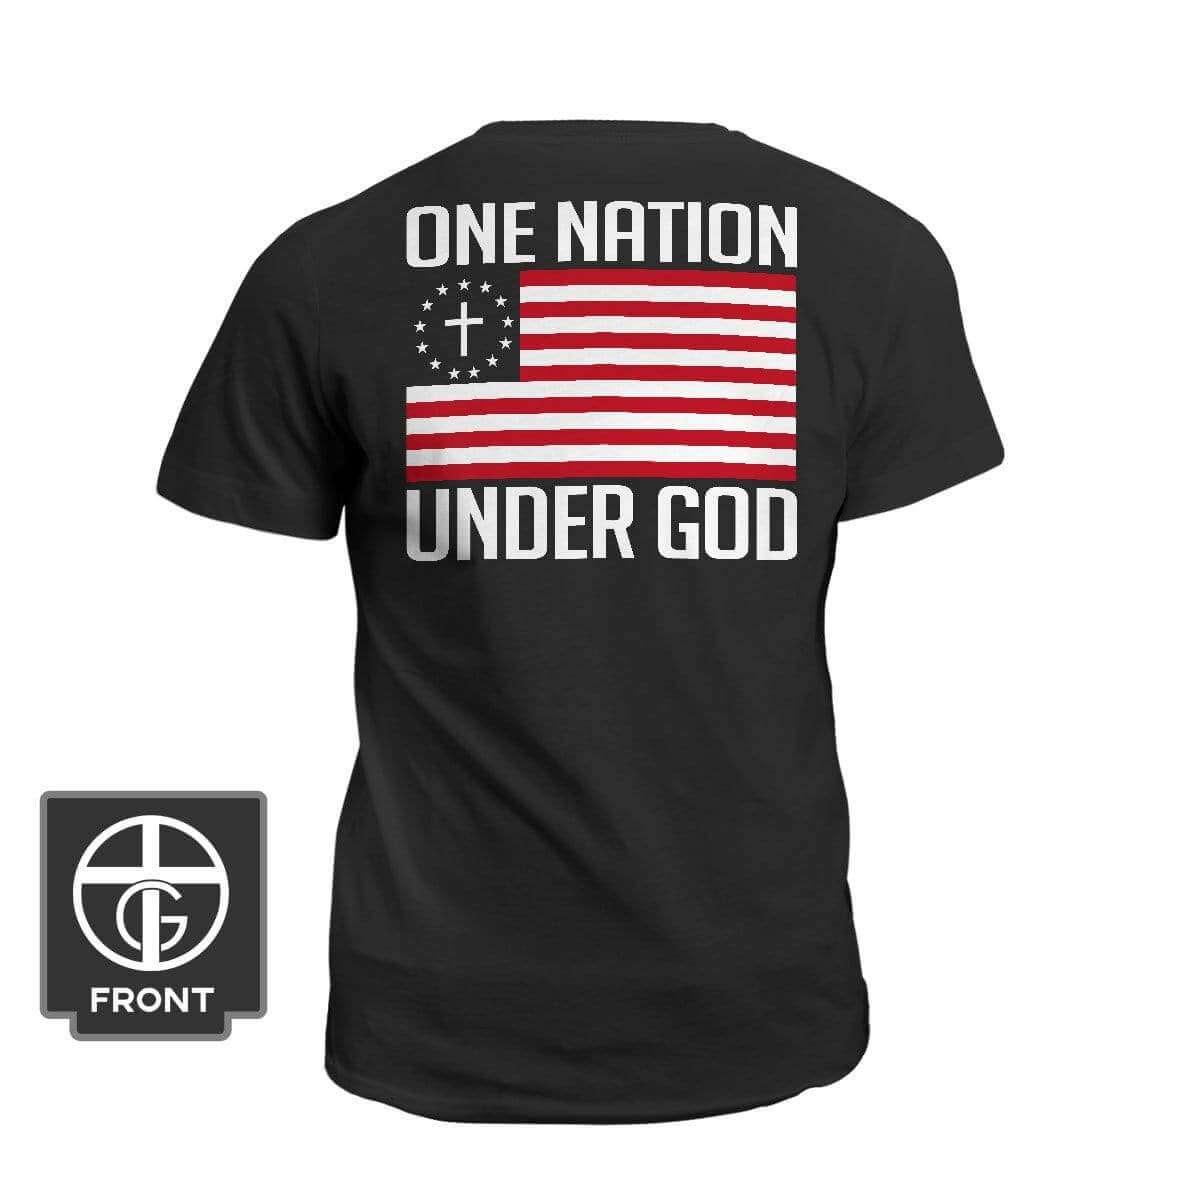 One Nation Under God (Back Print)